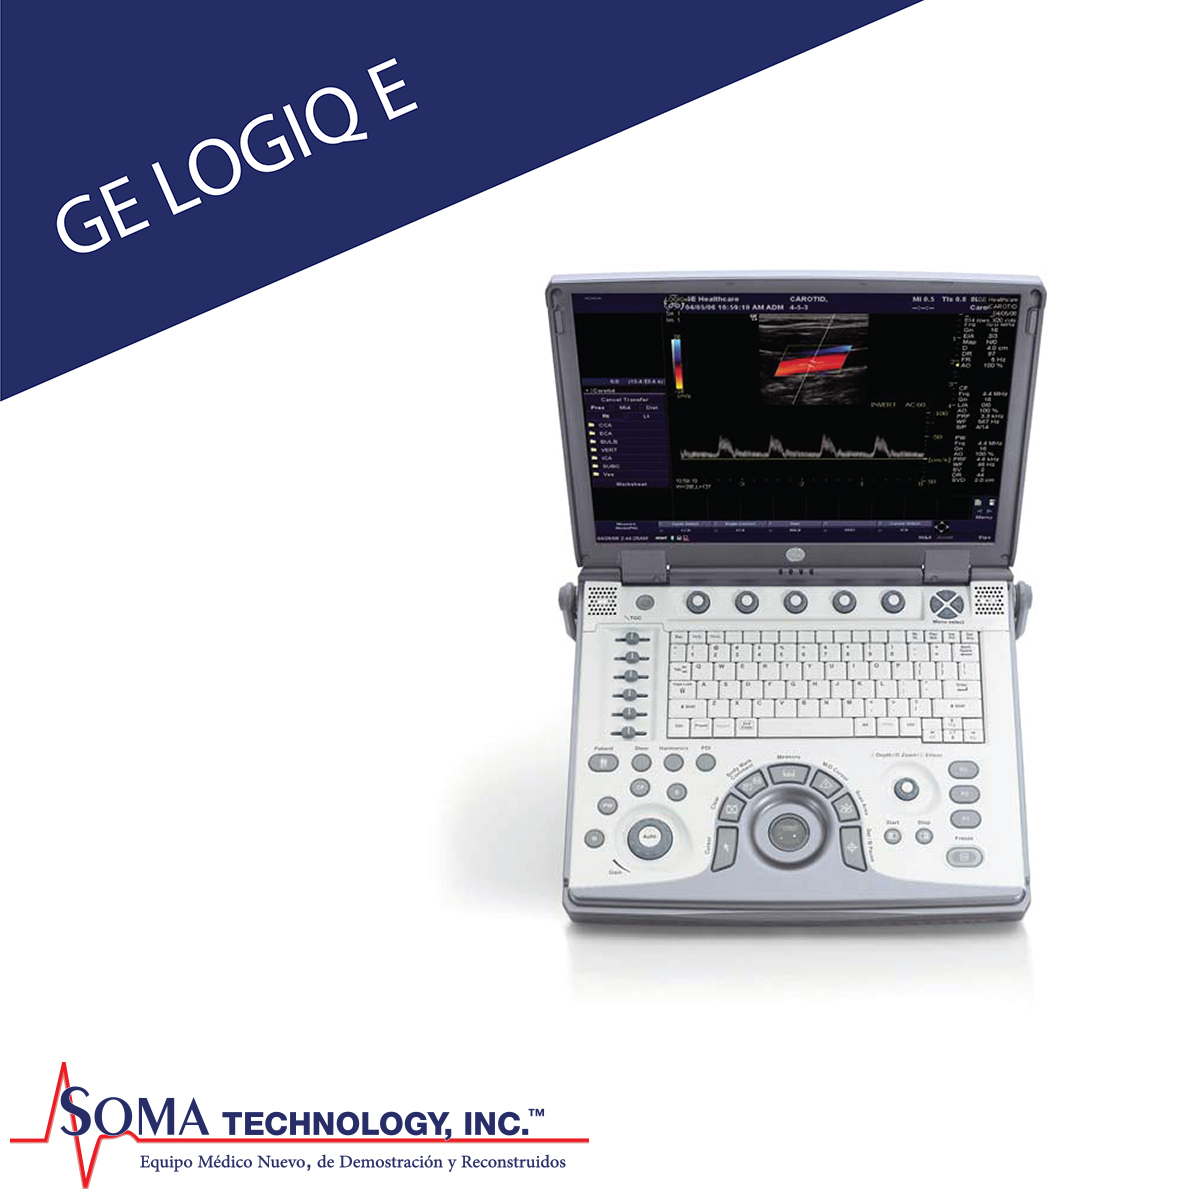 Ultrasonido Portable GE Logiq e - Soma Technology, Inc.